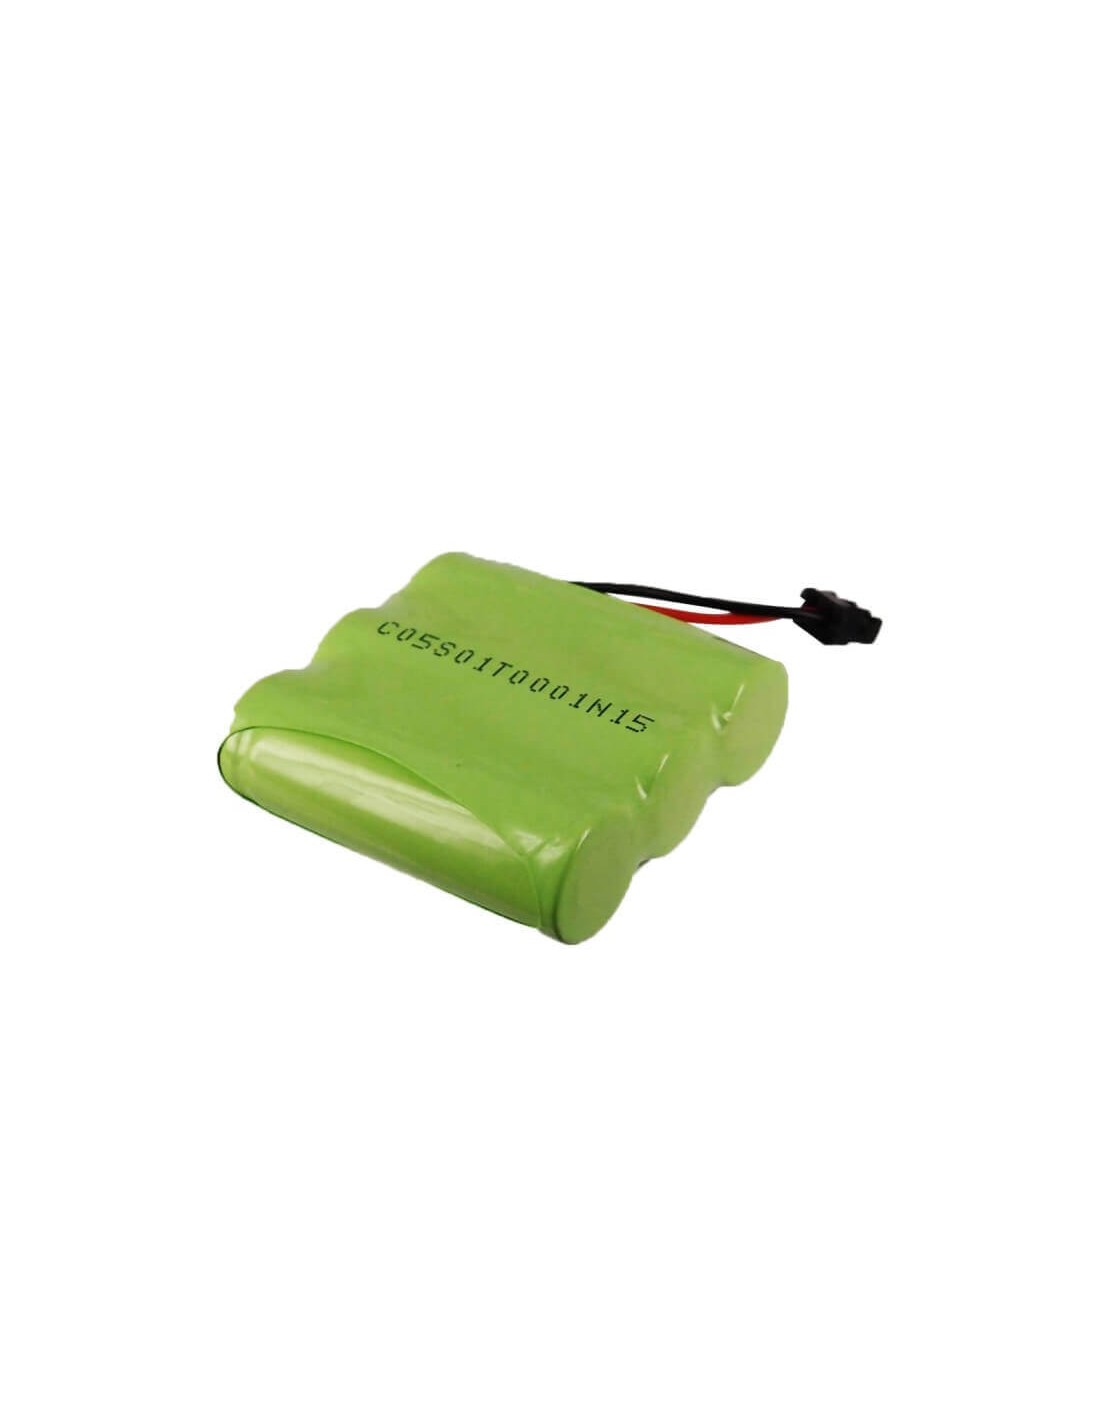 Battery for Panasonic, Kx-tg210, Kx-tg210alb, Kx-tg210b, Kx-tg2397, 3.6V, 1200mAh - 4.32Wh